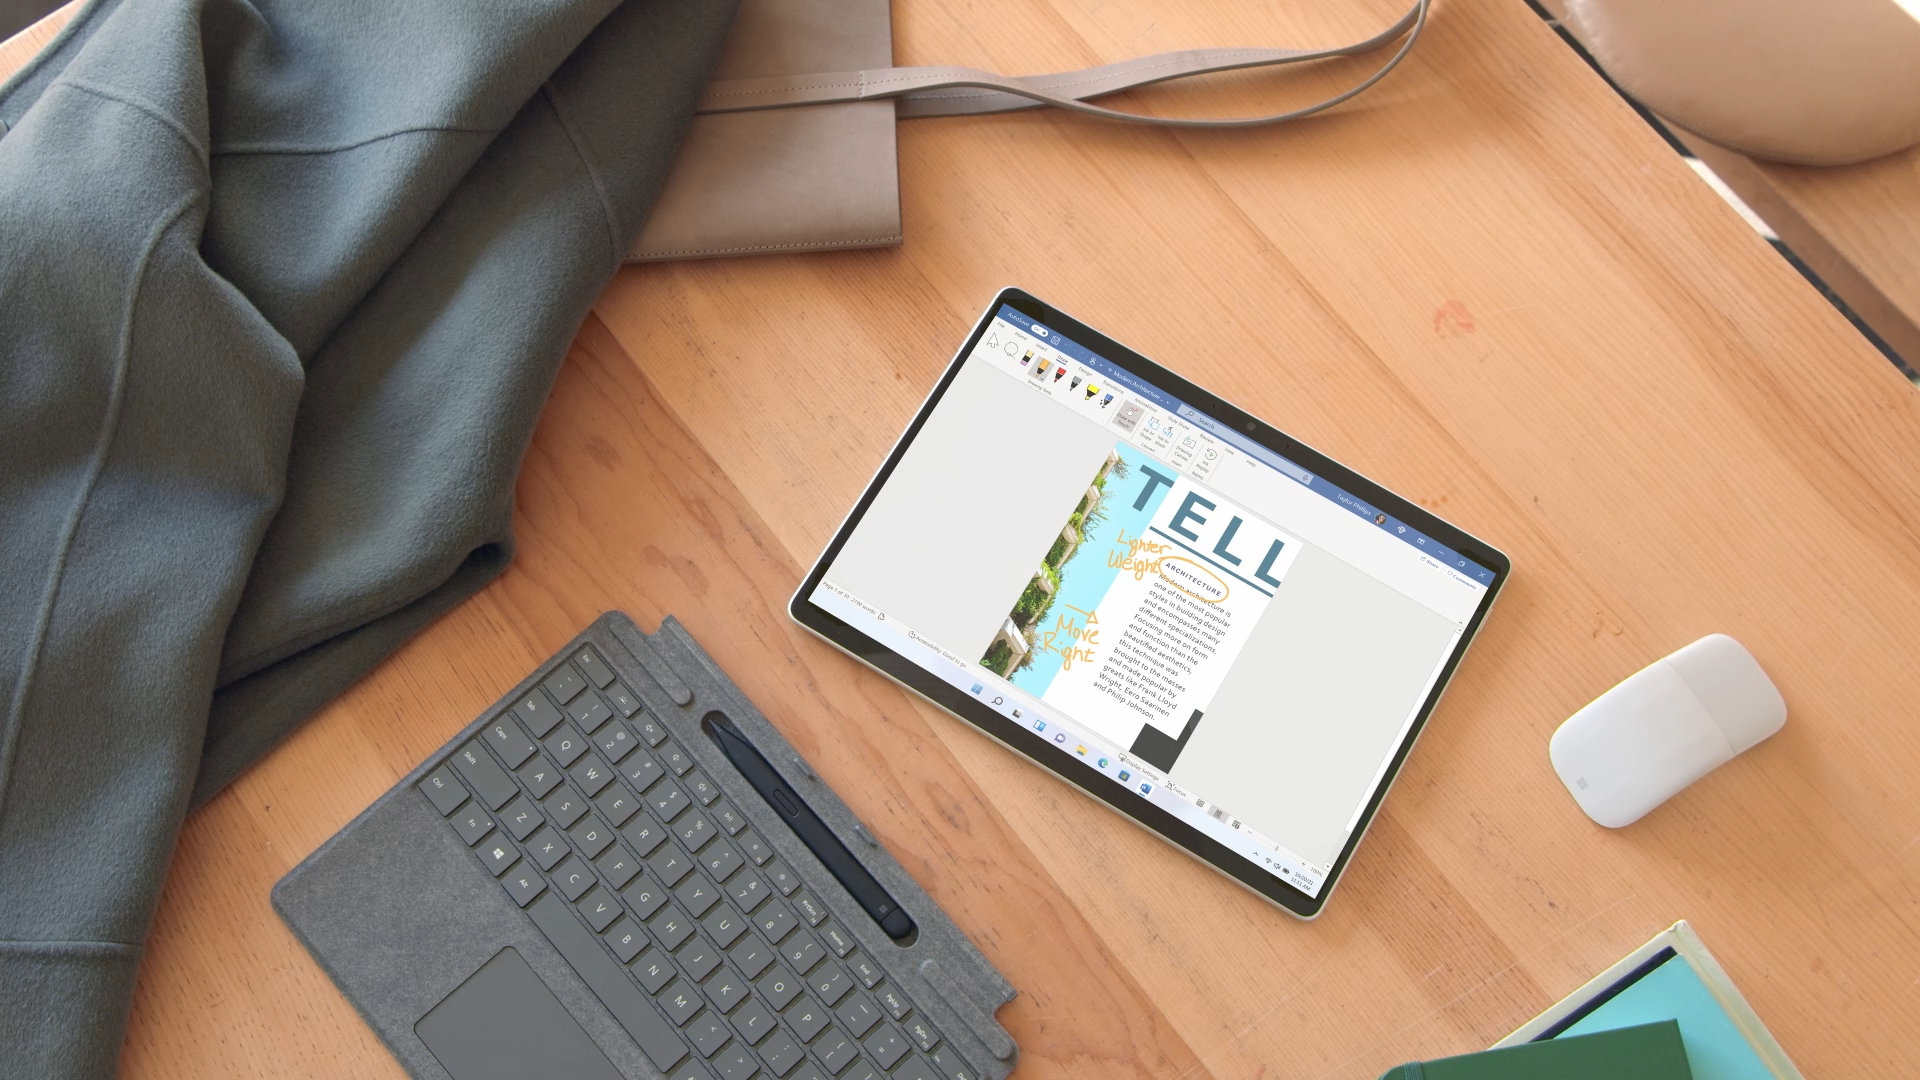 Surface Pro 8 đã ra đời với những tính năng vượt trội hơn bao giờ hết. Nếu bạn là một tín đồ công nghệ thì chắc chắn không thể bỏ qua hình ảnh liên quan đến sản phẩm này.